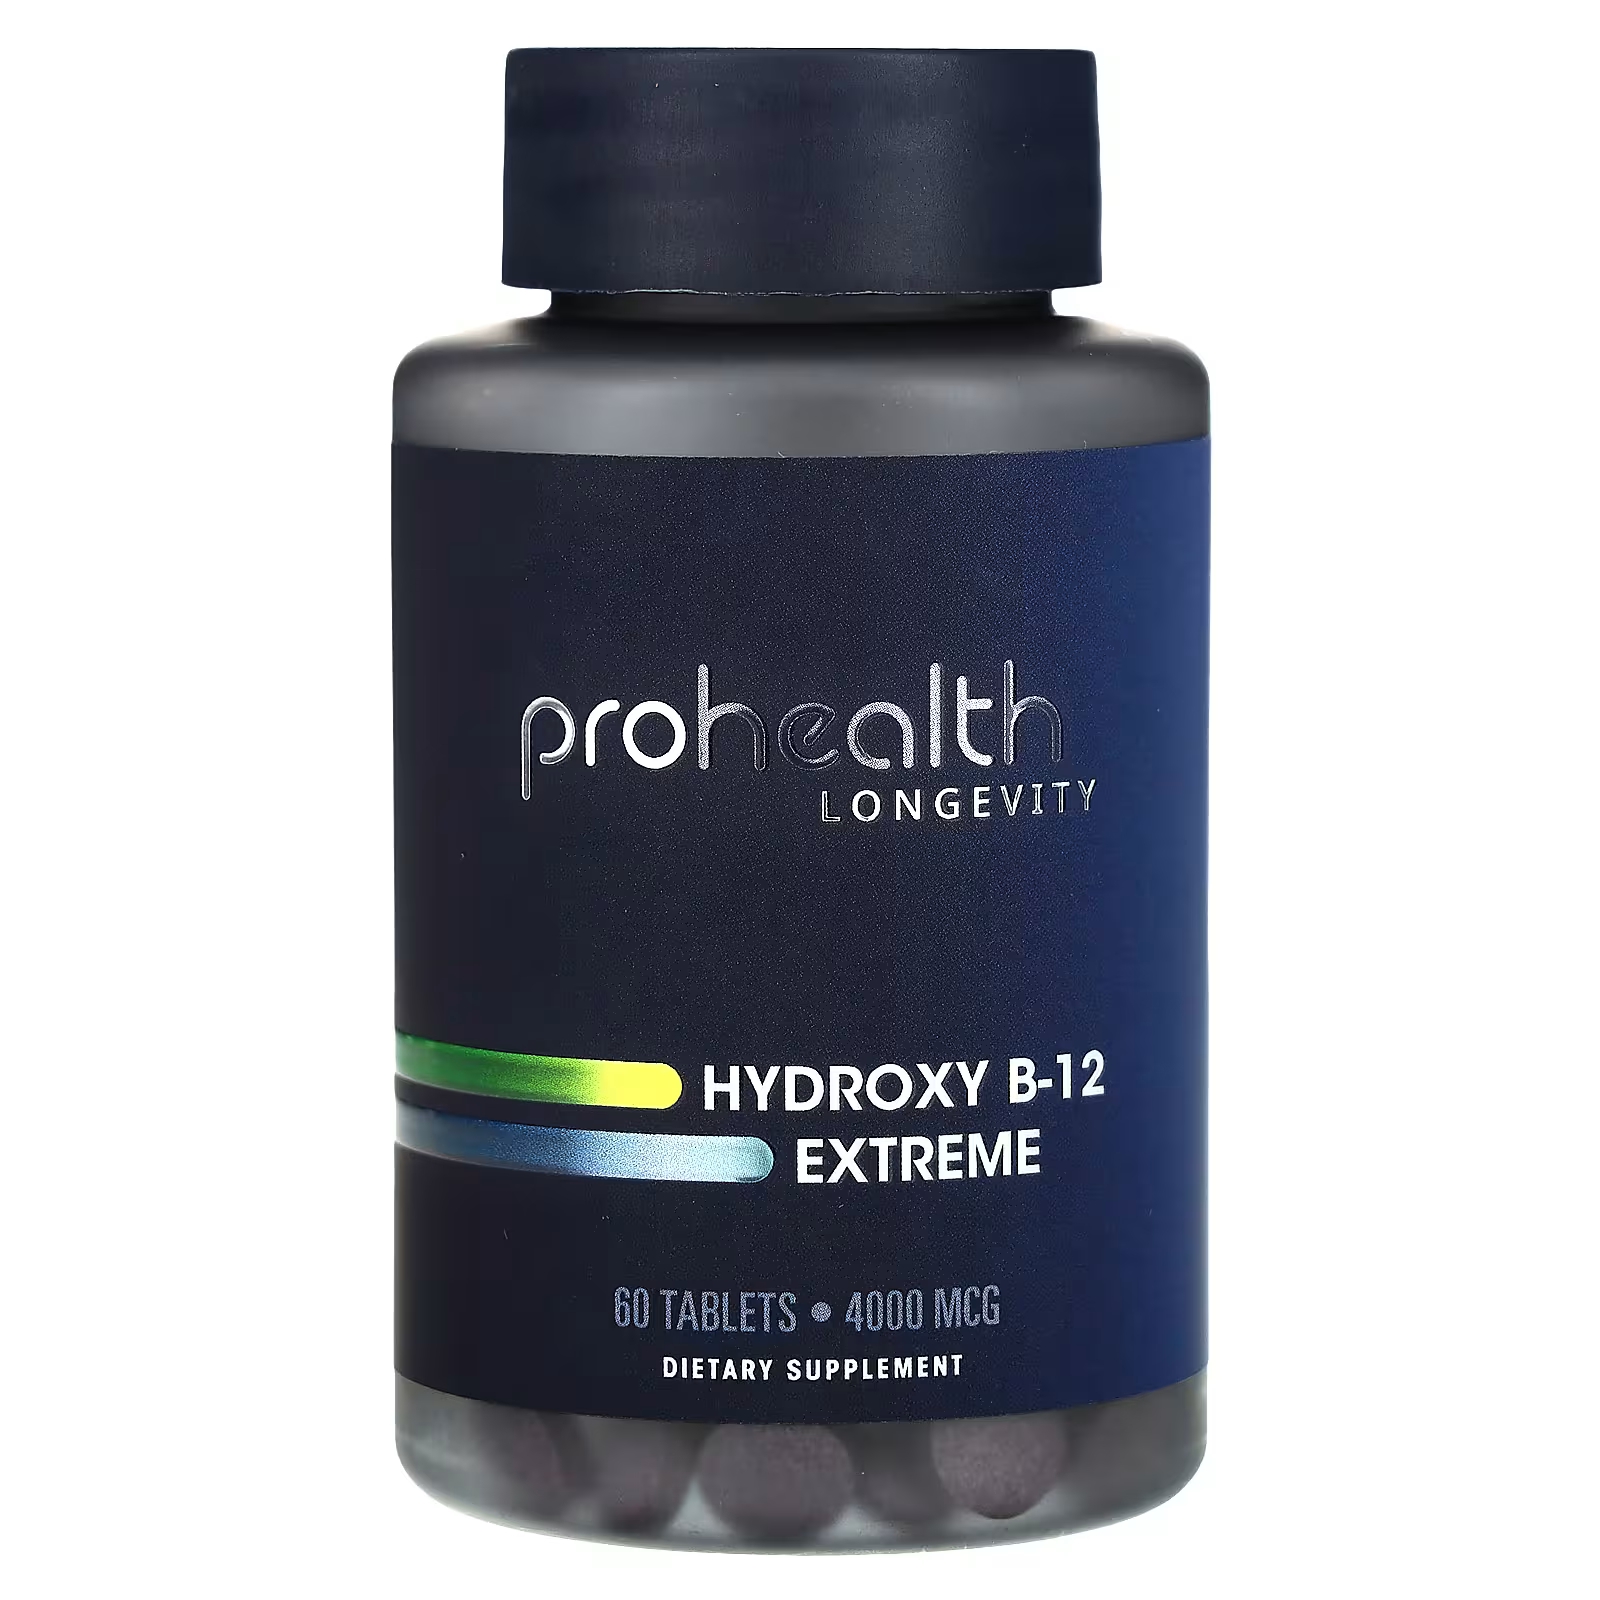 ProHealth Longevity Hydroxy B-12 Extreme 4000 мкг 60 таблеток prohealth longevity hydroxocobalamin extreme 60 таблеток